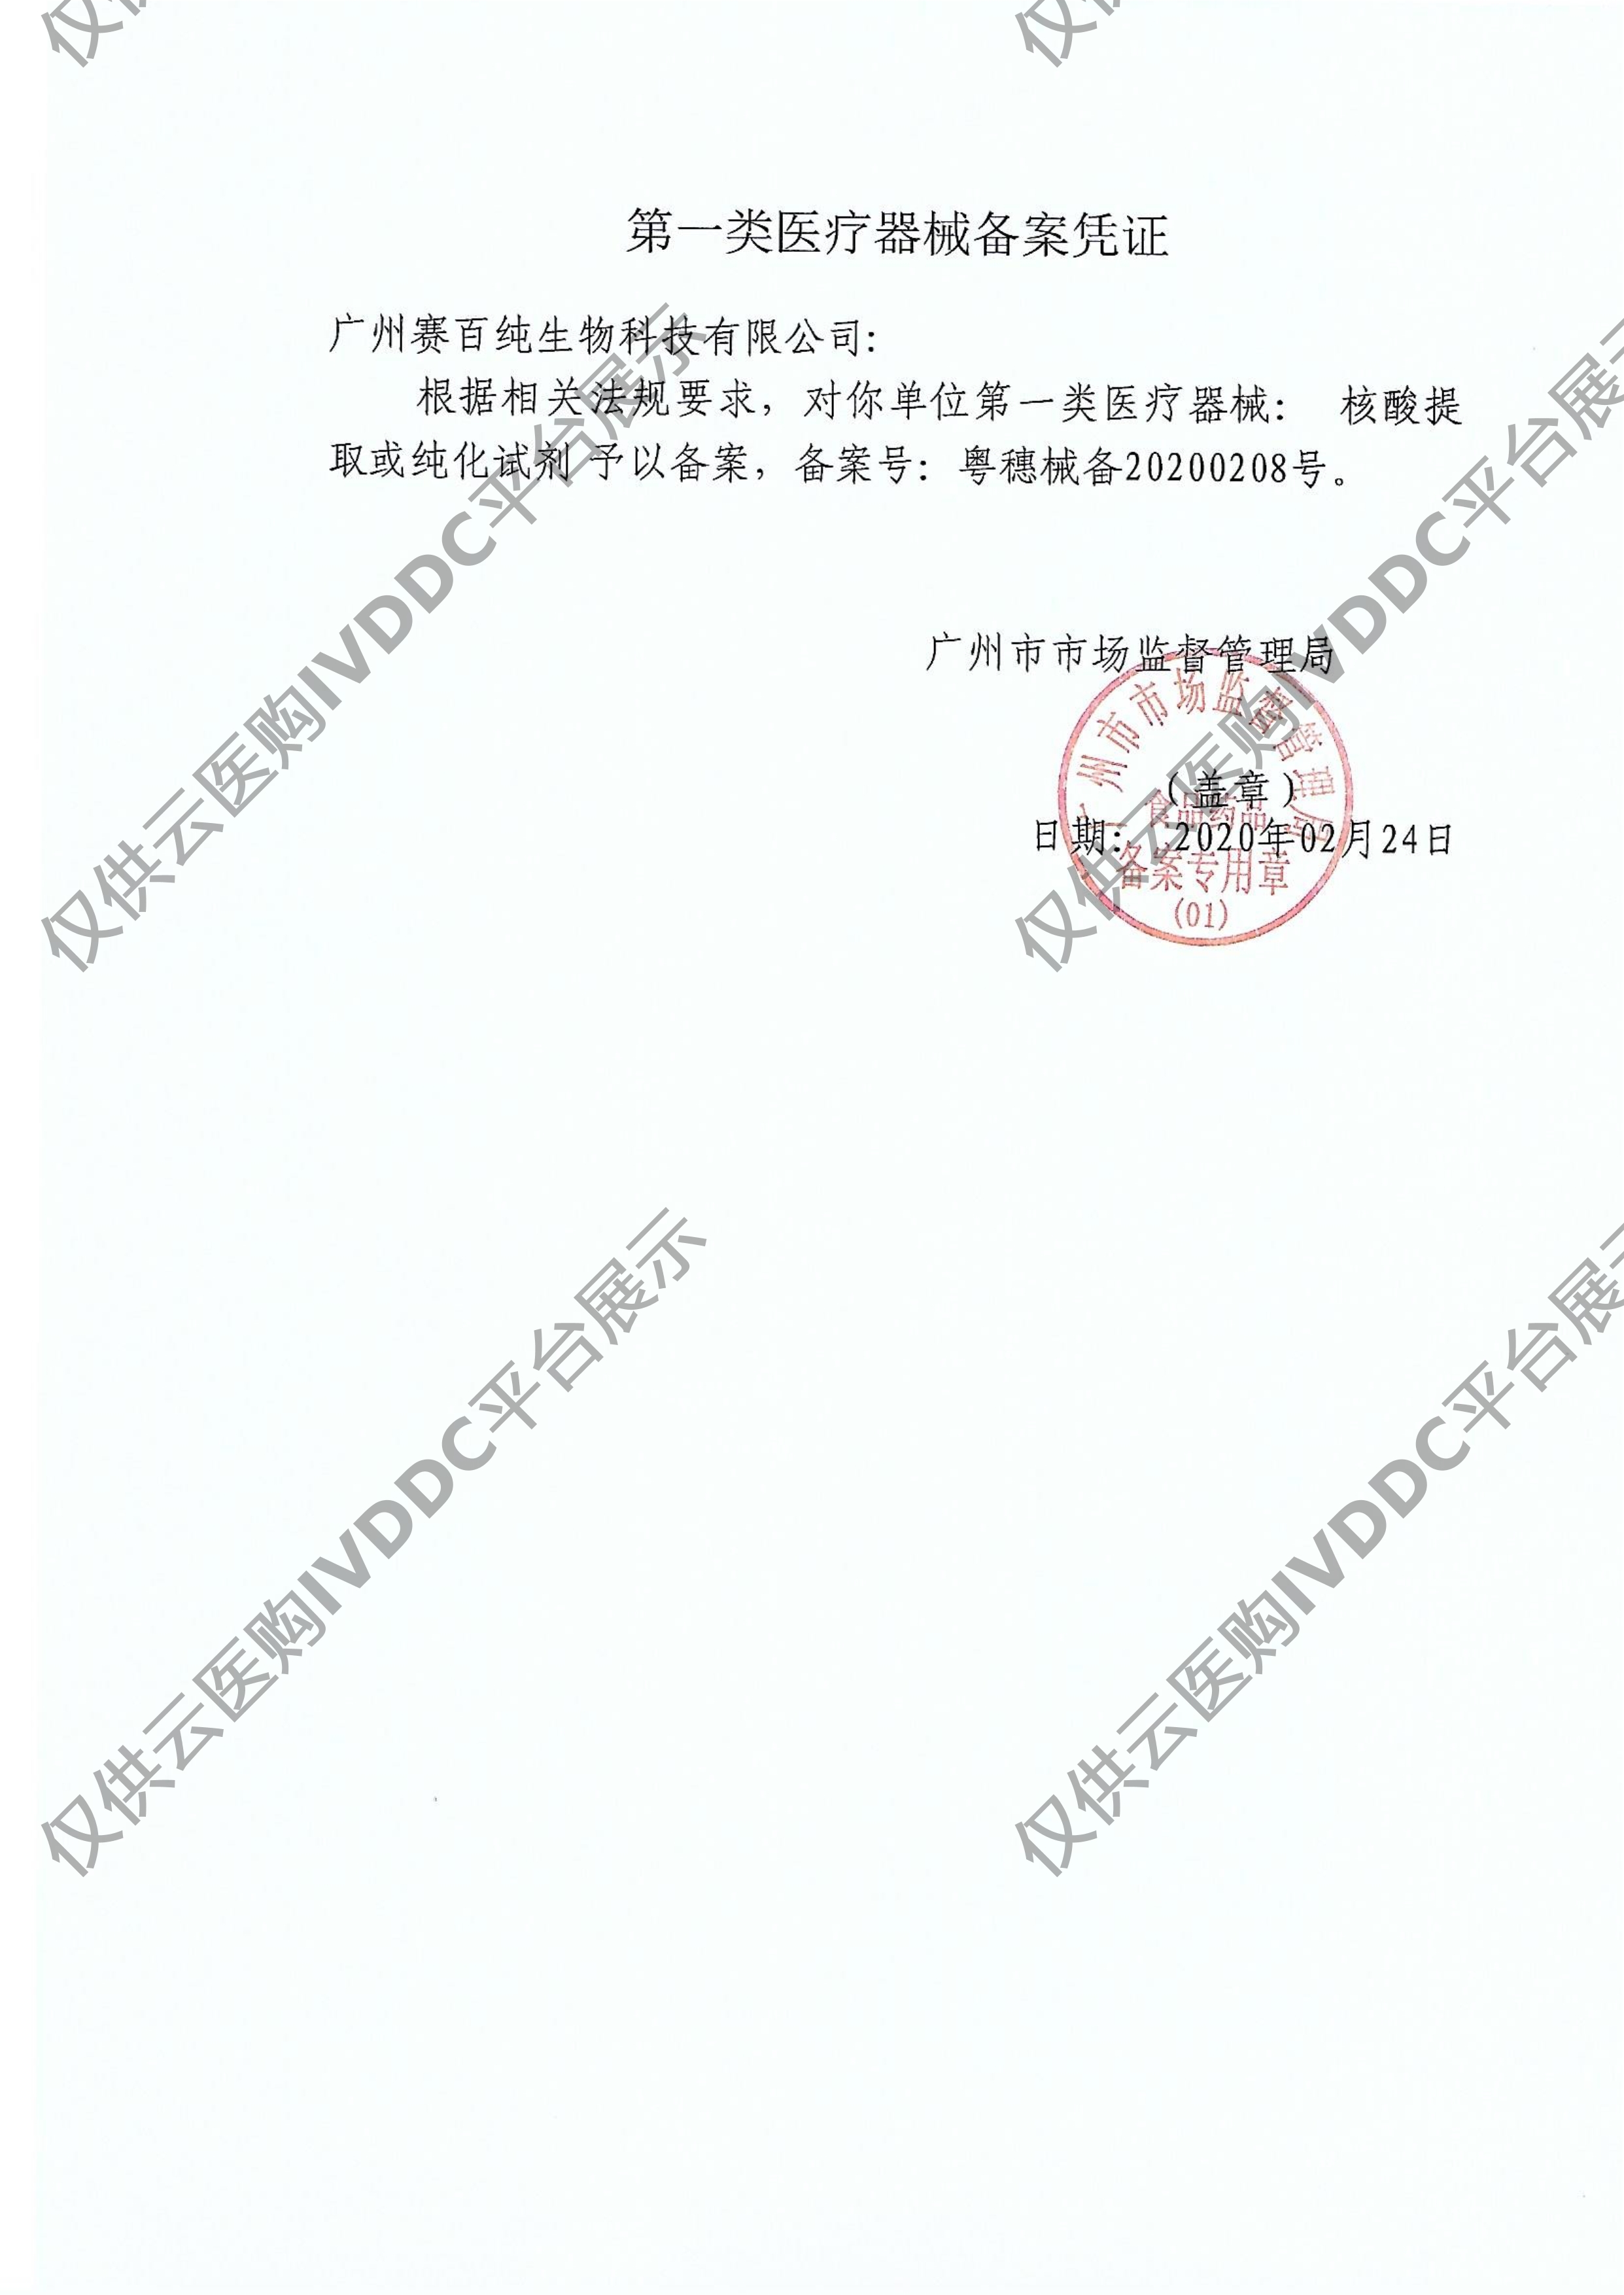 【赛百纯】 核酸提取或纯化试剂 Sup-011601/Sup-011602/Sup-011603注册证